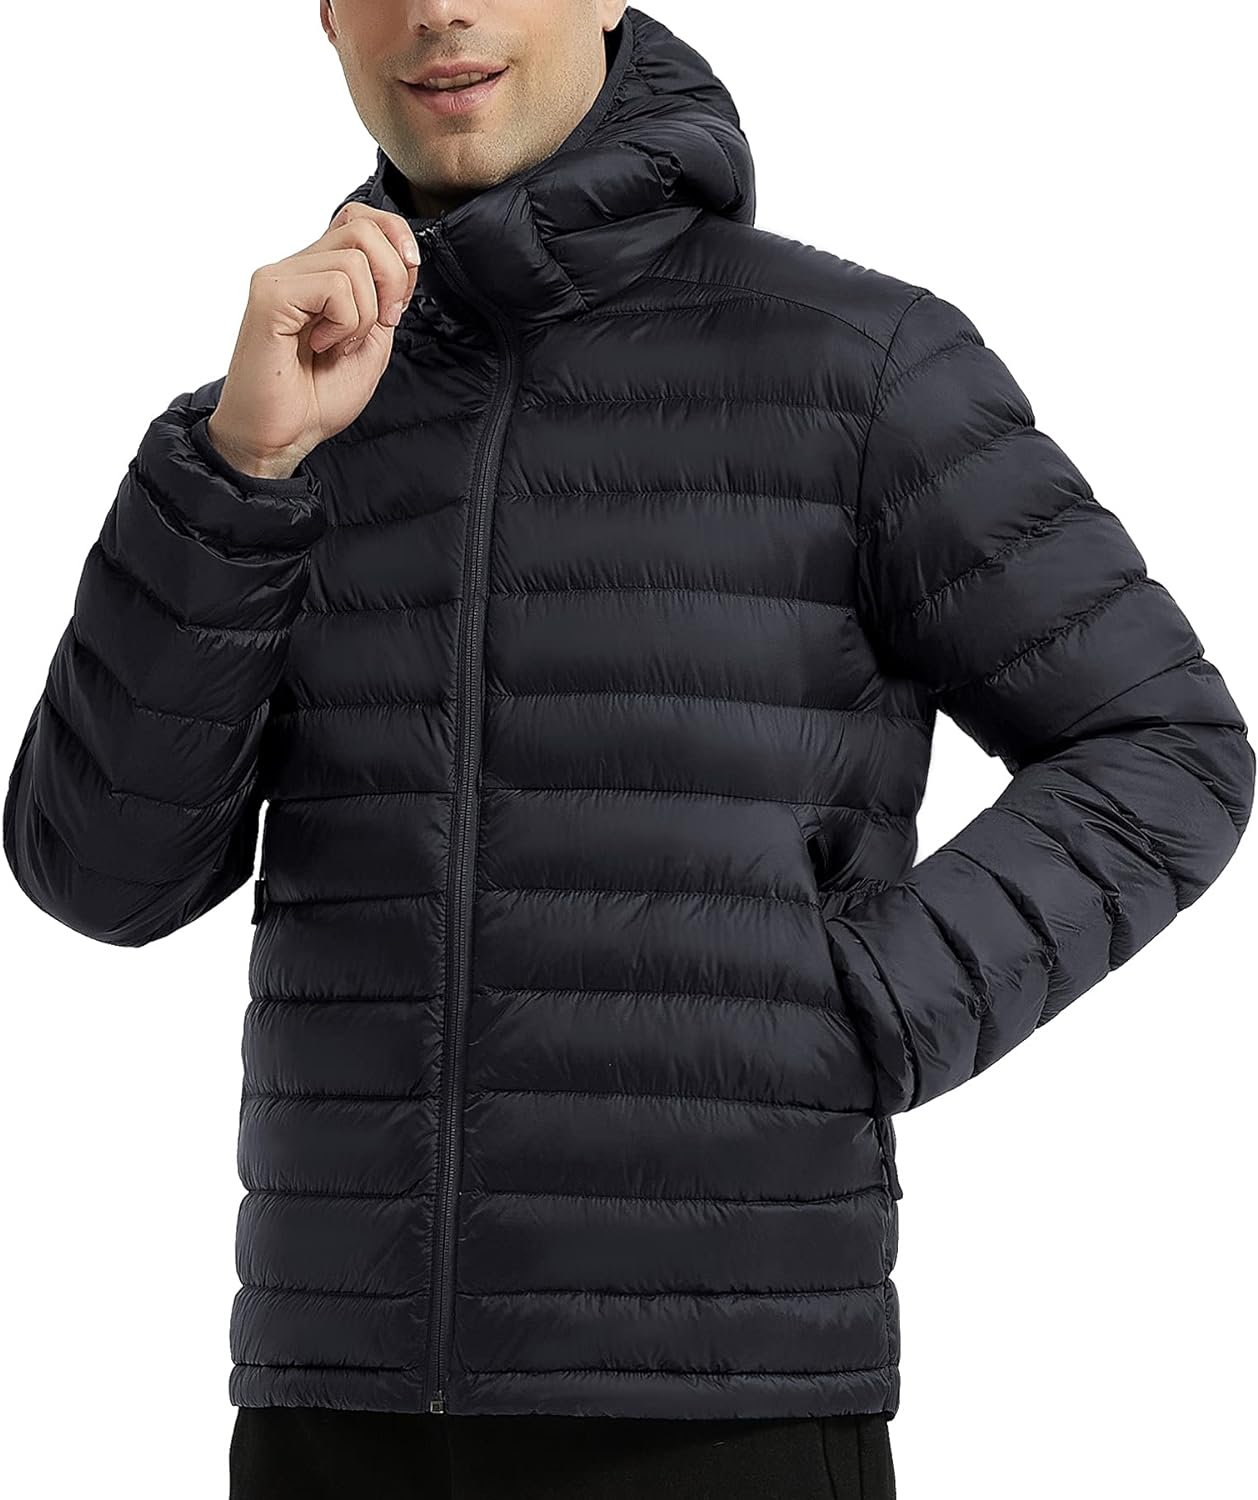 Mens Lightweight Packable Outwear Puffer Down Coats